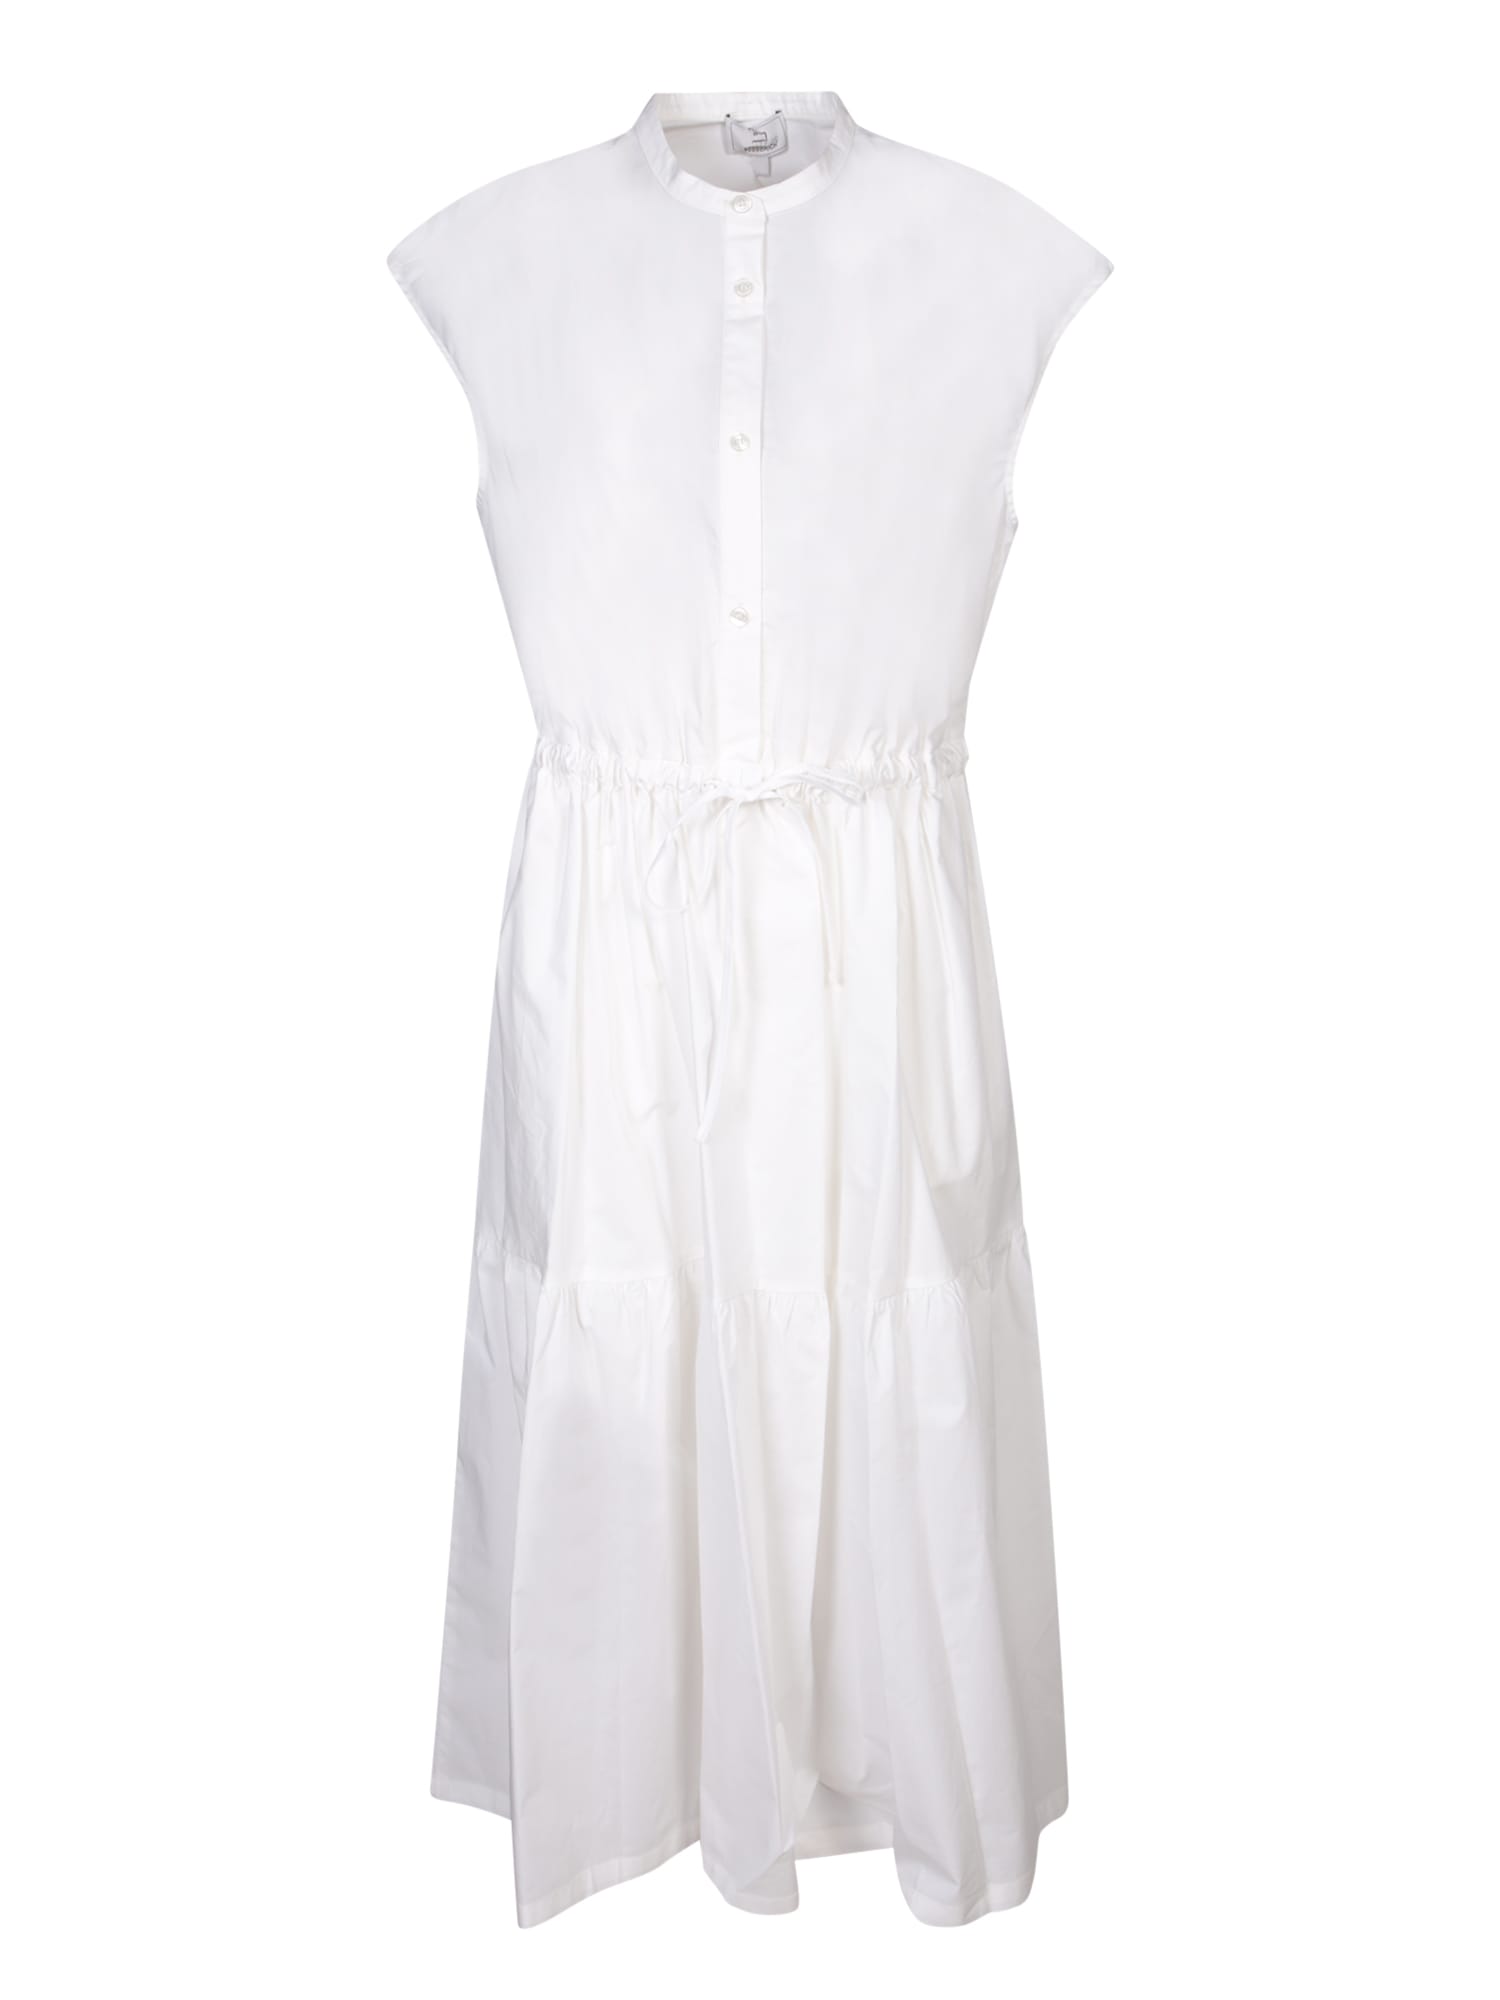 White Midi Shirt Dress